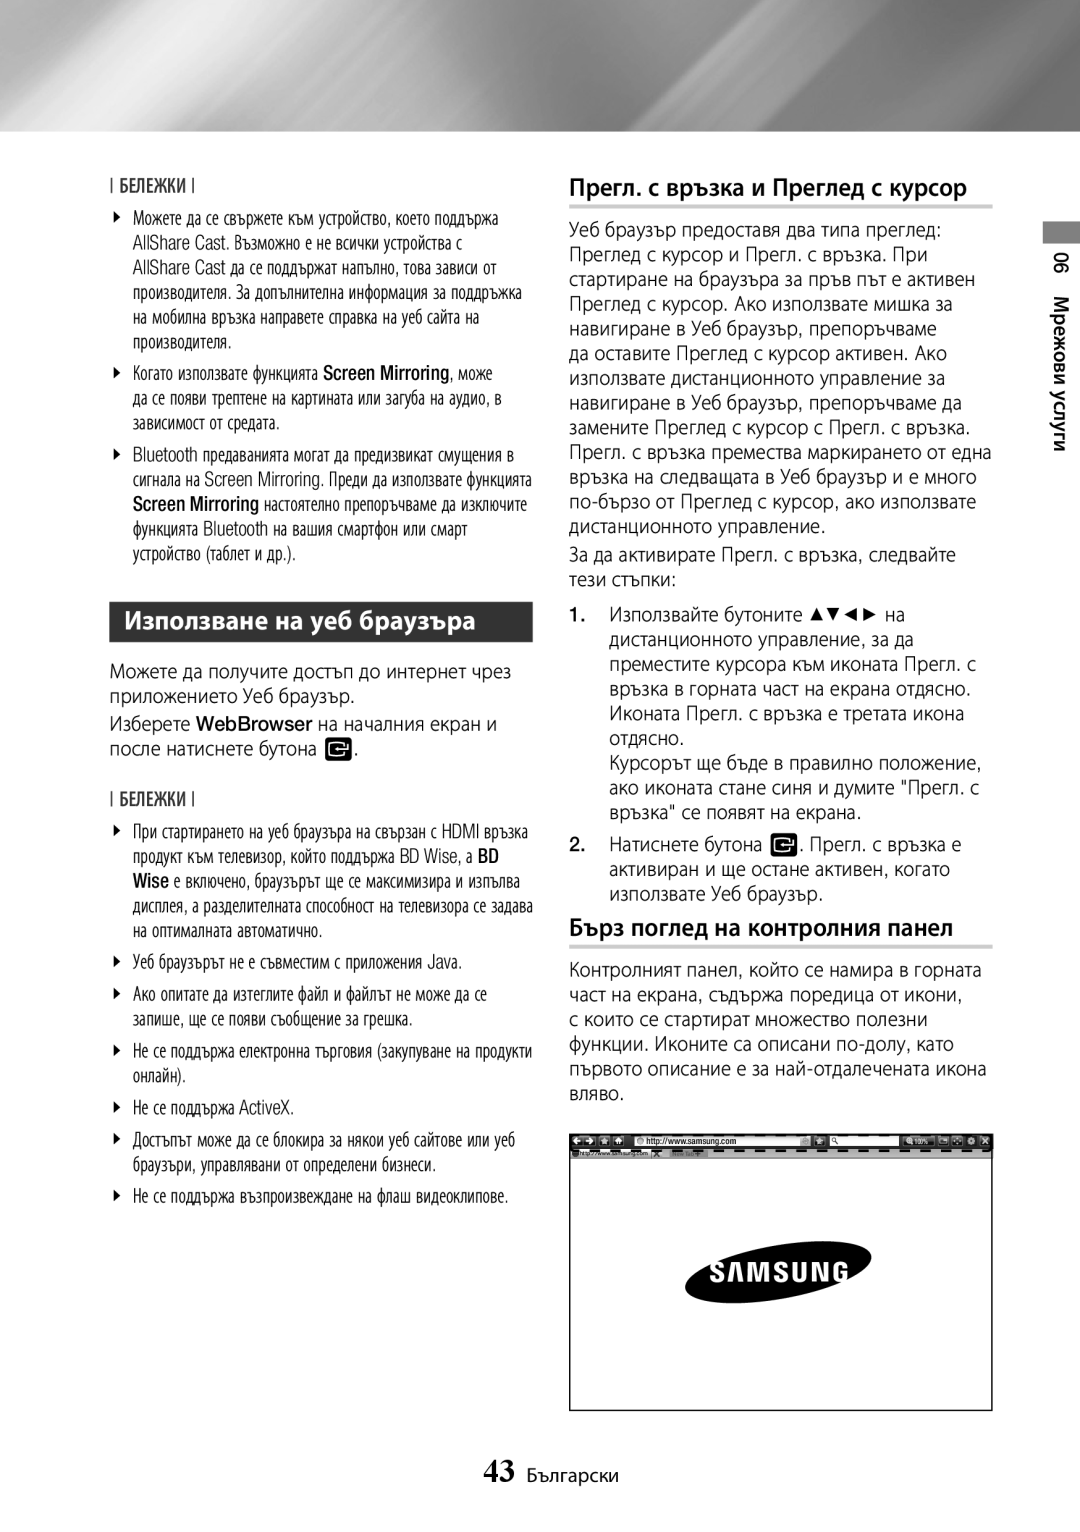 Samsung BD-J7500/EN manual Използване на уеб браузъра, Прегл. с връзка и Преглед с курсор, Бърз поглед на контролния панел 